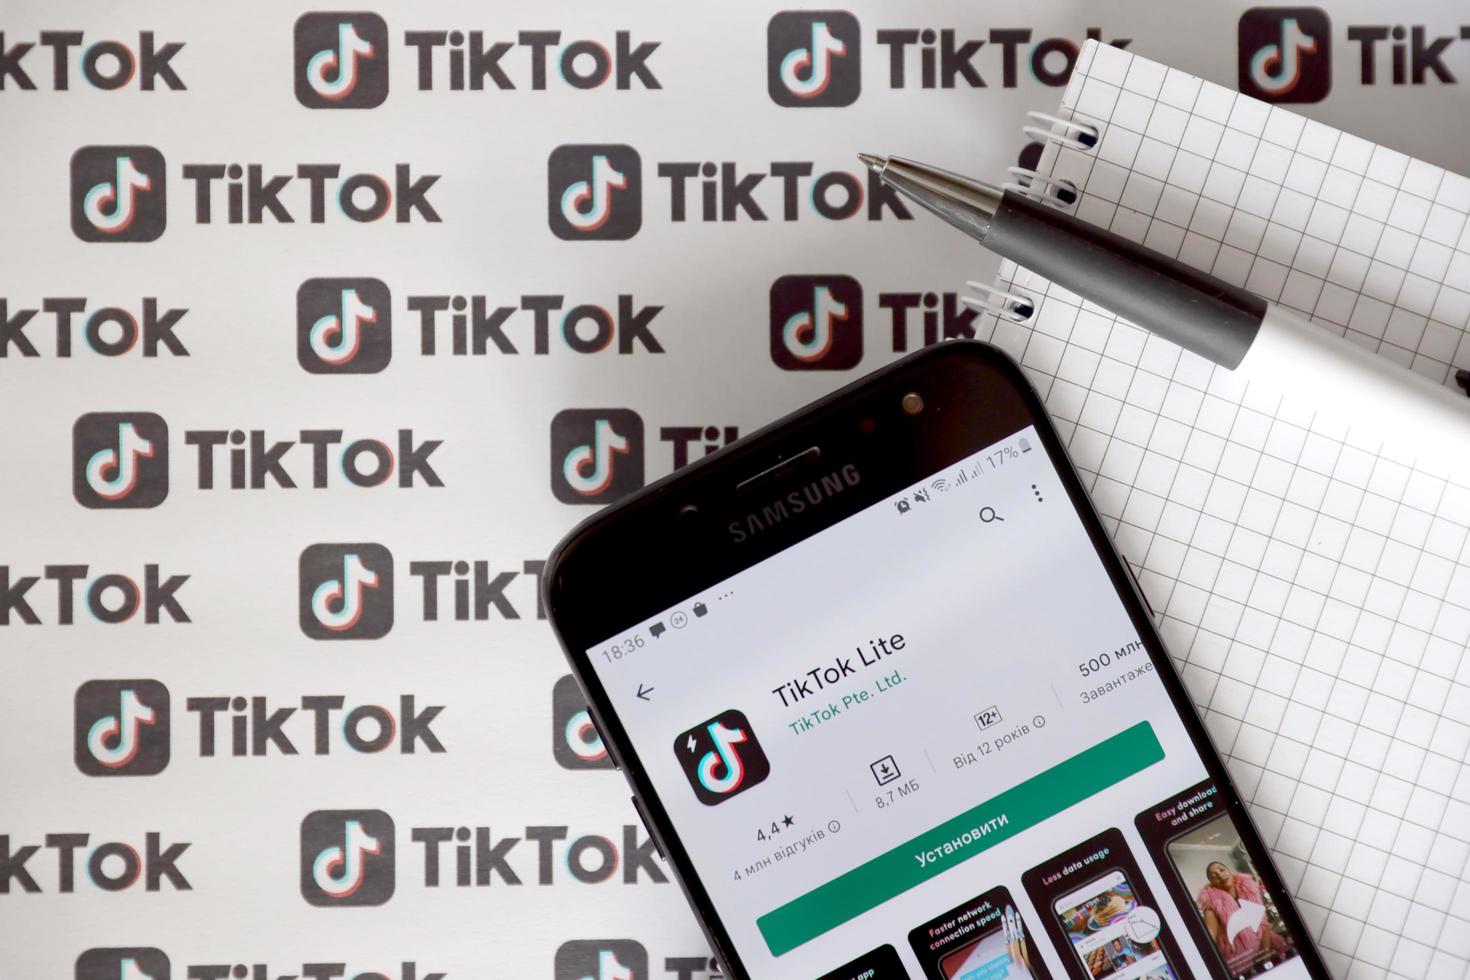 ternopil, ucrânia - 2 de maio de 2022 aplicativo para smartphone tik tok na tela e muitos logotipos tiktok impressos em papel. tiktok ou douyin é um famoso serviço chinês de hospedagem de vídeos curtos de propriedade da bytedance foto